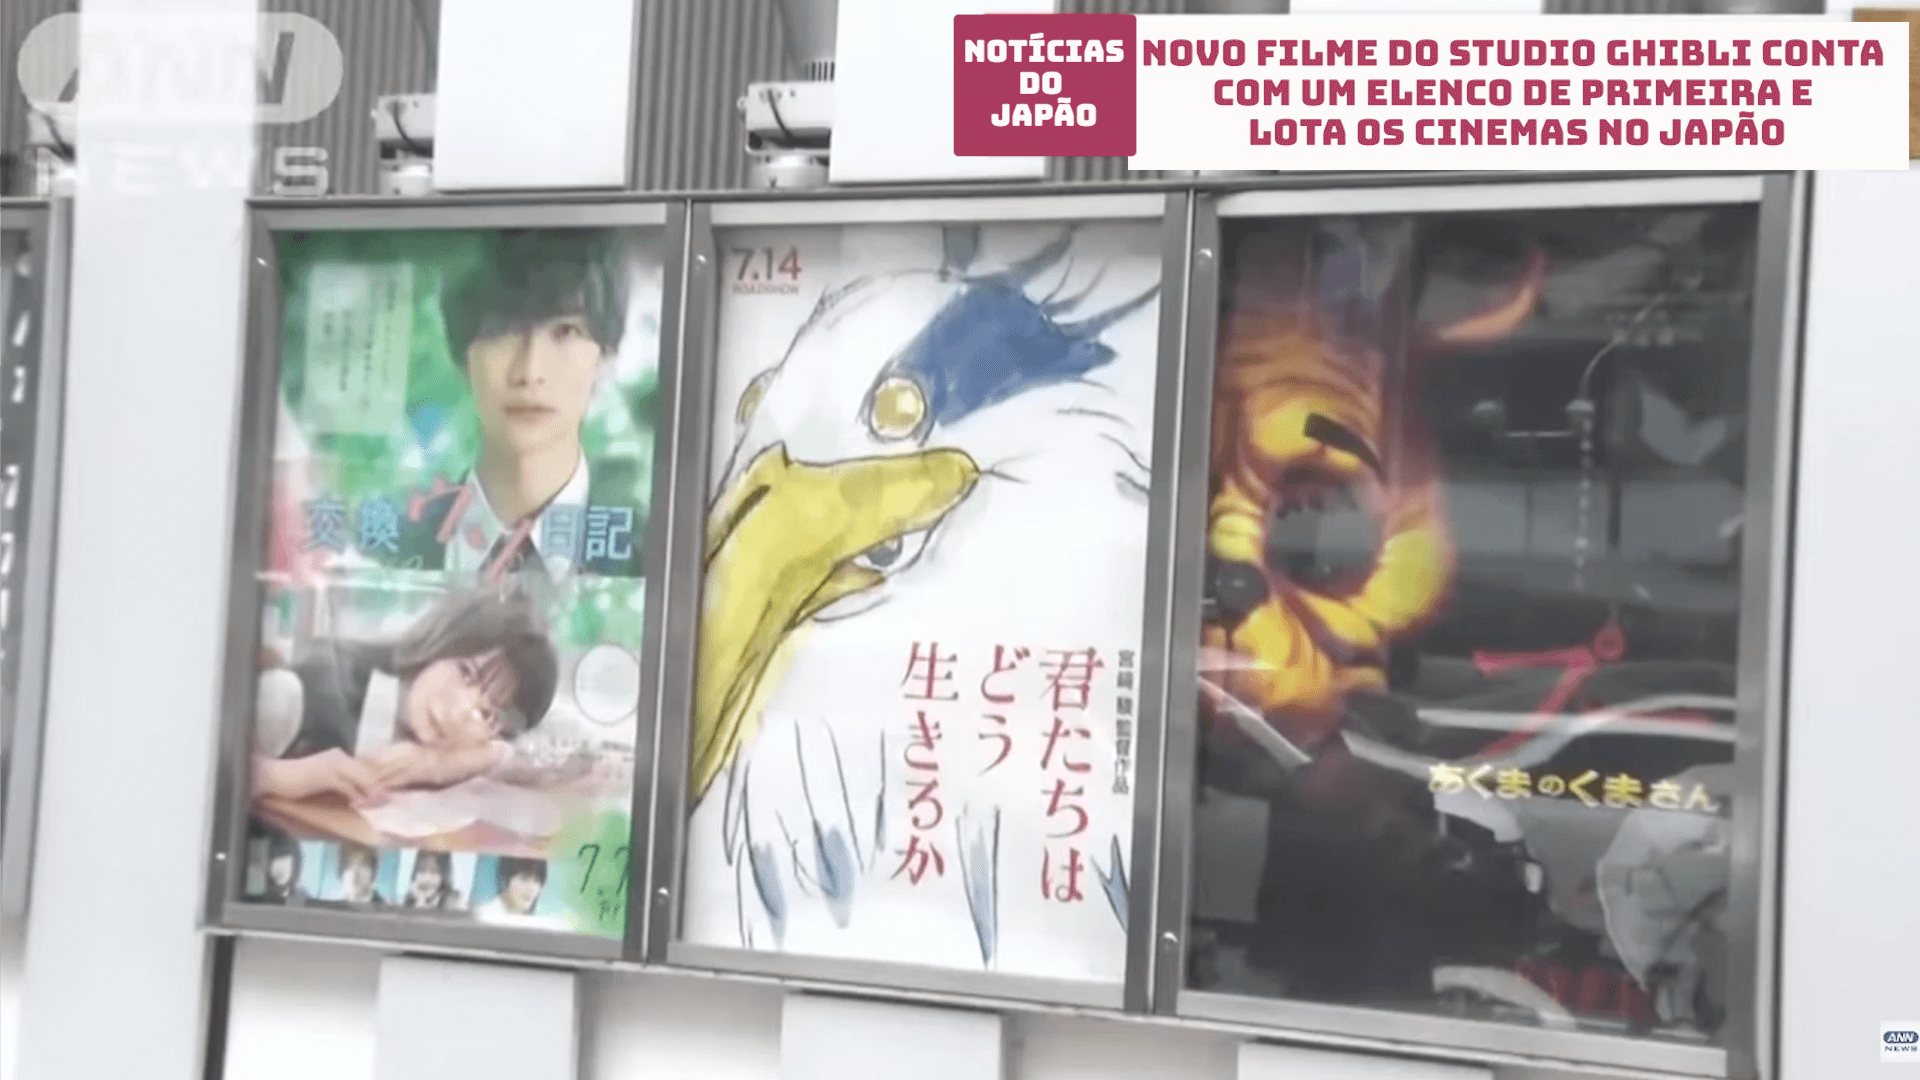 Novo filme do Studio Ghibli conta com um elenco de primeira e lota os cinemas no Japão 